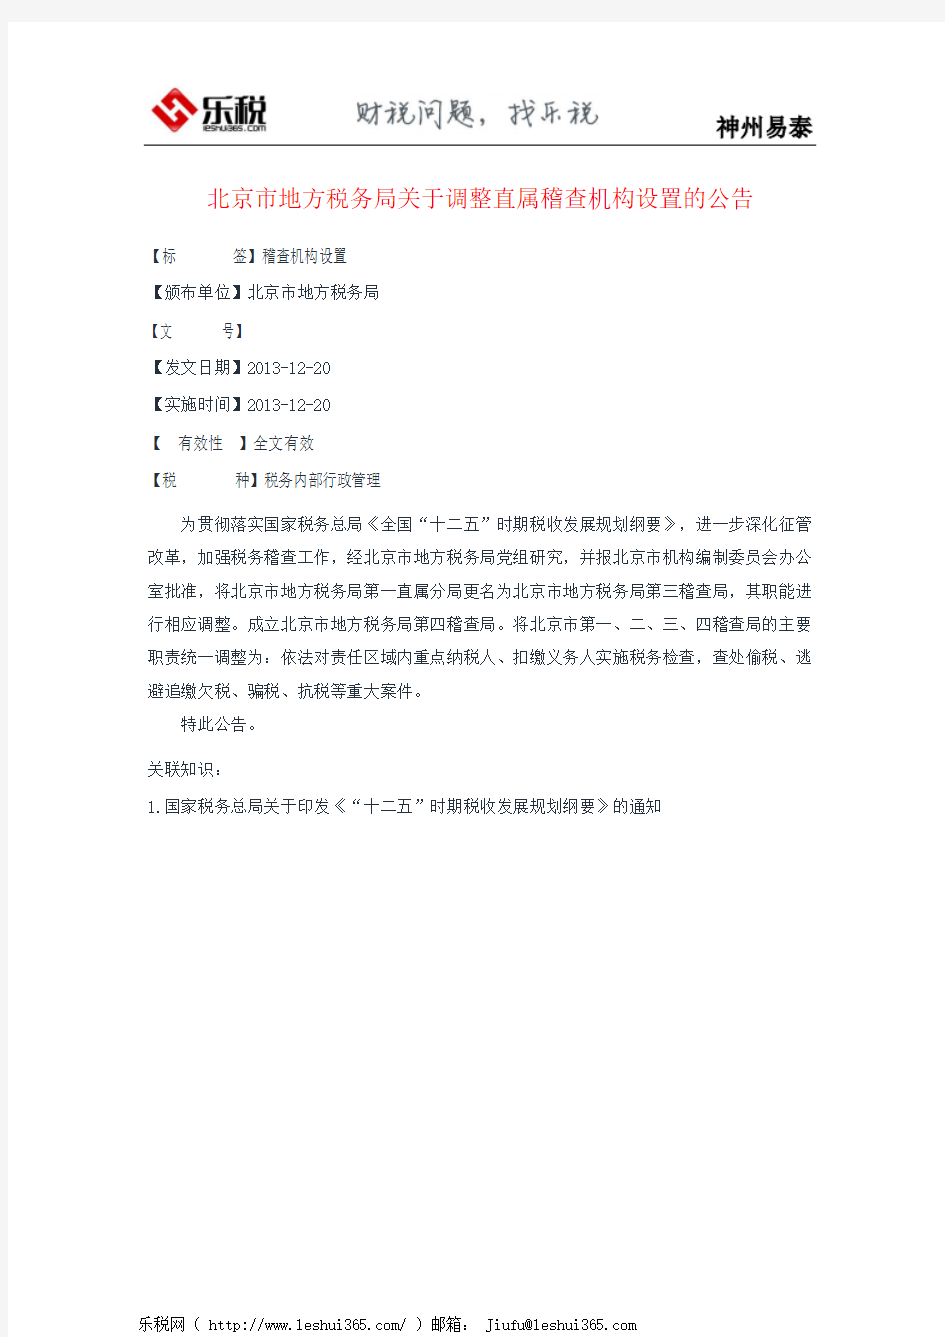 北京市地方税务局关于调整直属稽查机构设置的公告